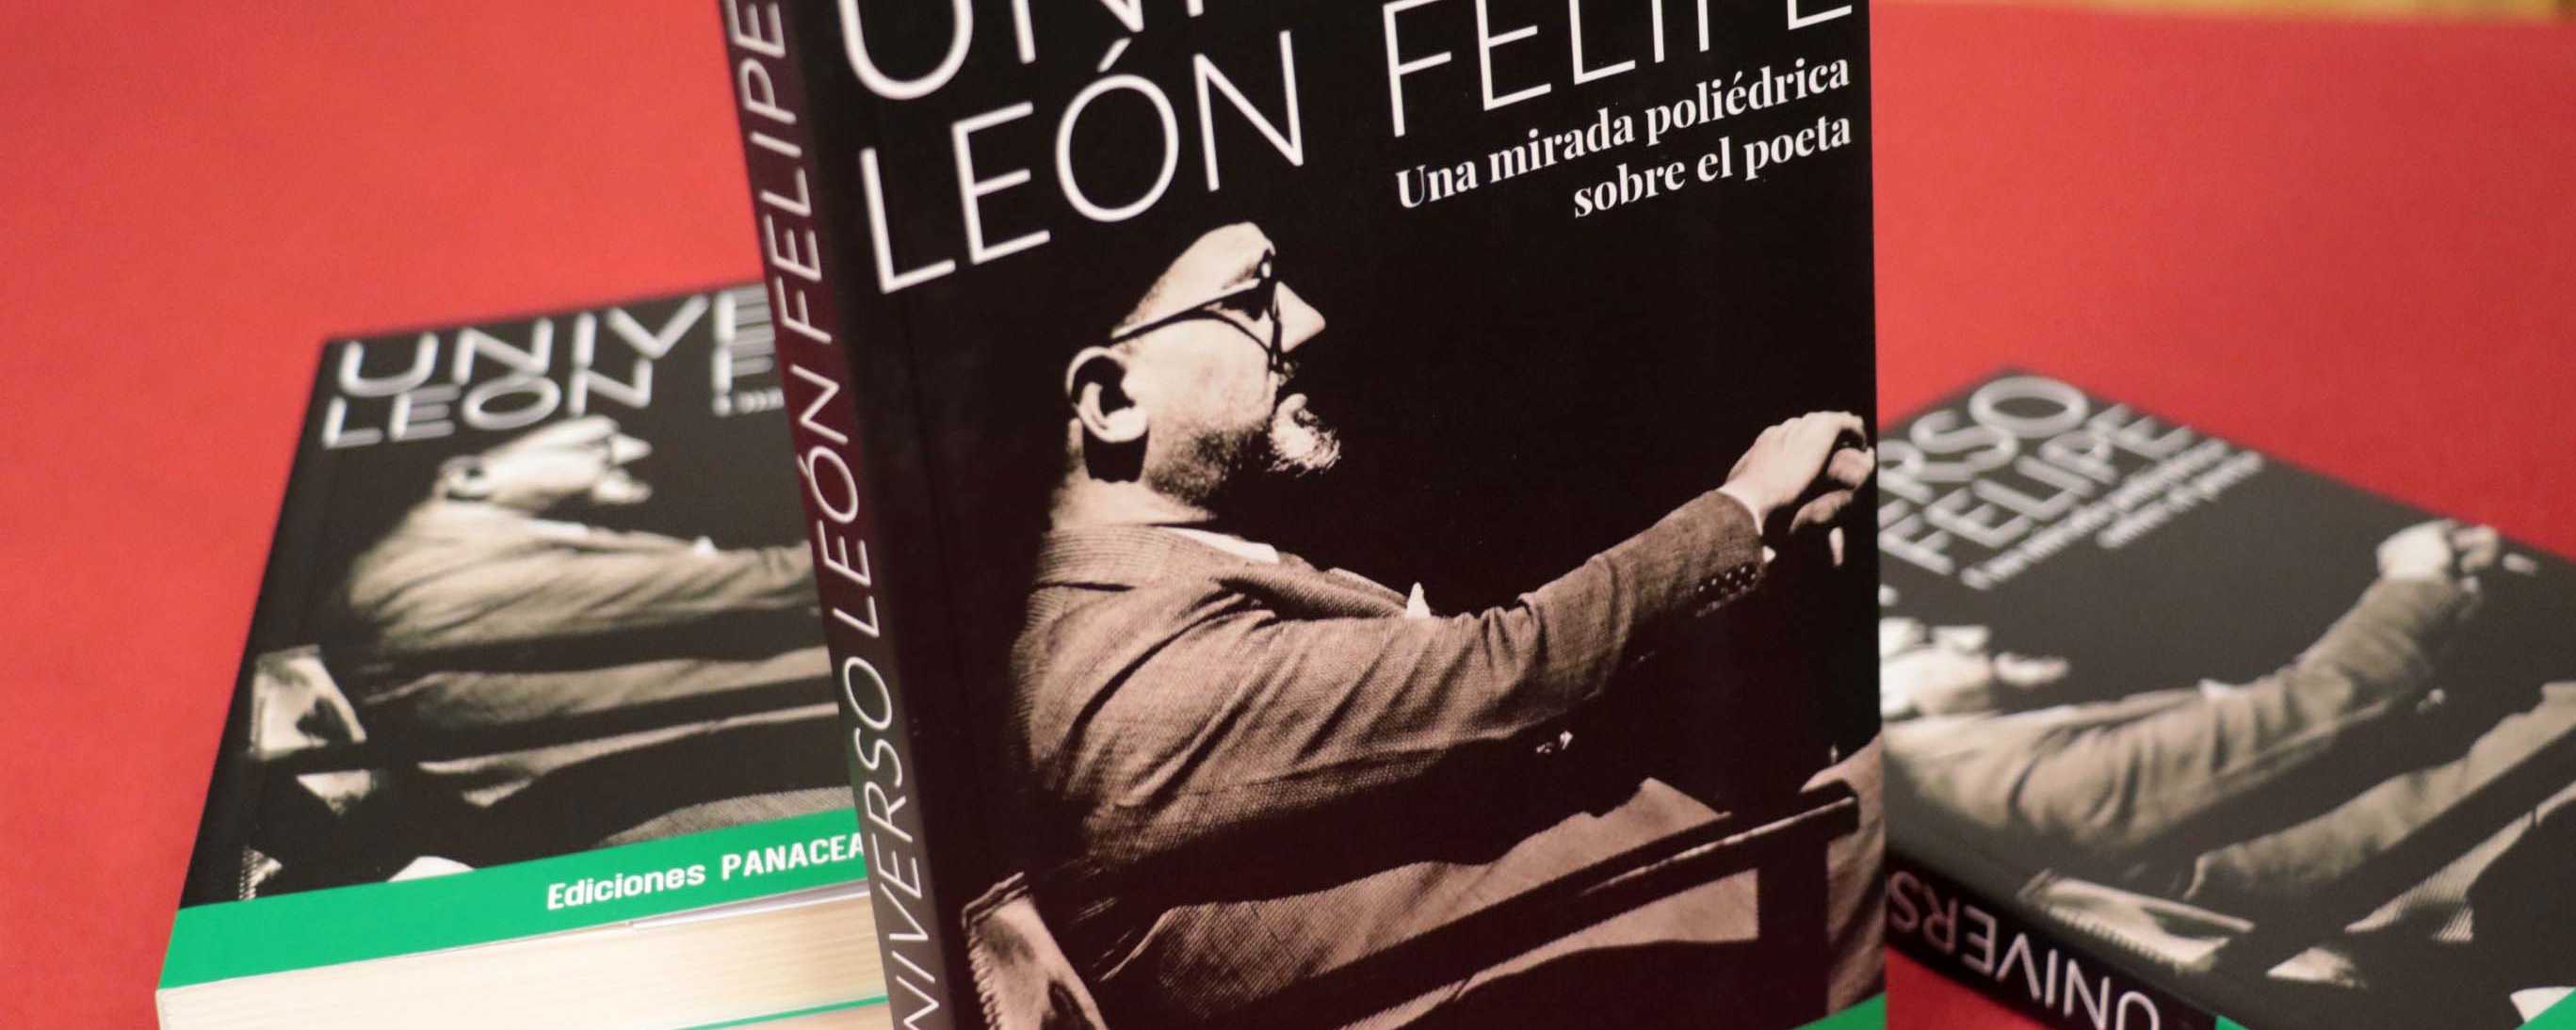 Presentado el libro Universo LeÃ³n Felipe